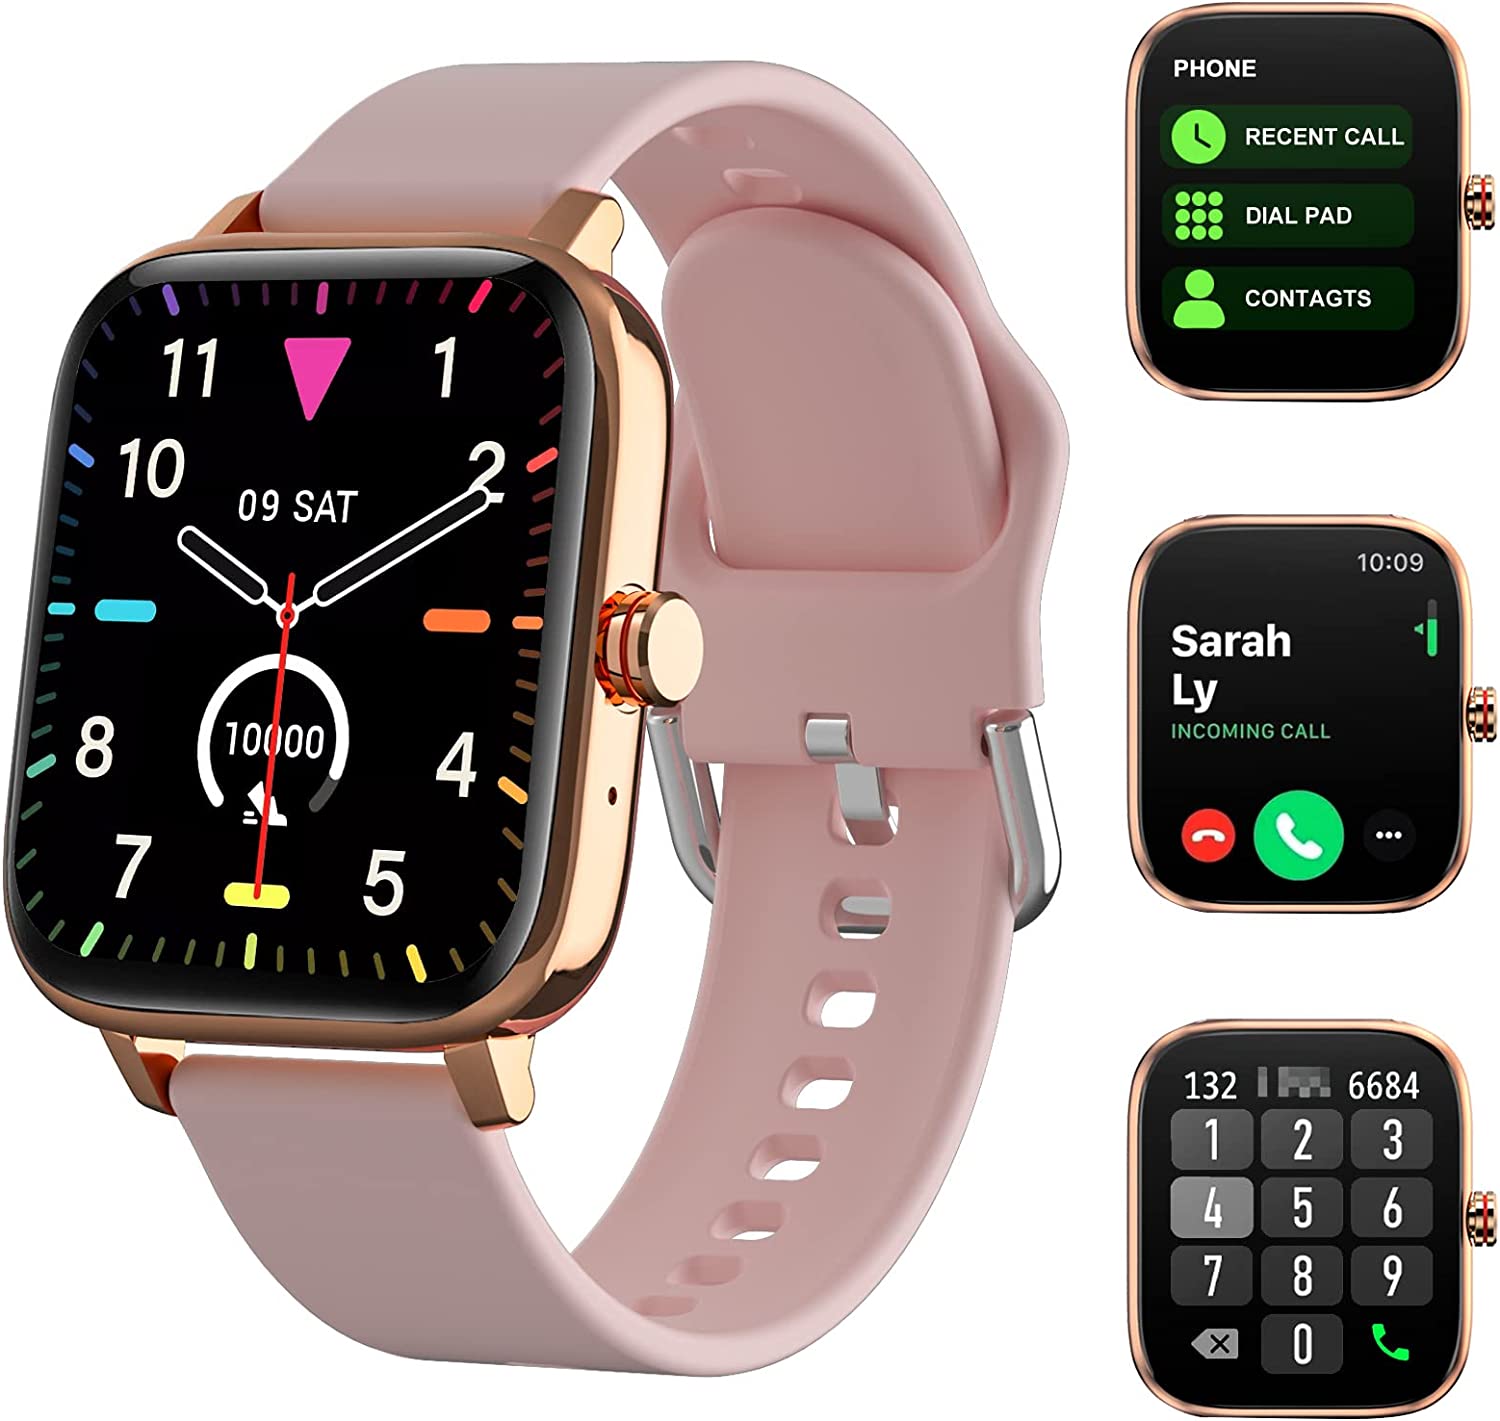 남성 여성을 위한 TOZDTO 스마트워치 선물, 안드로이드 iOS폰용 문자와 통화 기능이 있는 1.7인치 풀 터치 스크린 스마트워치, 스포츠 모드가 있는 GPS 피트니스 트래커 시계, 만보계, 거리, 칼로리(핑크)